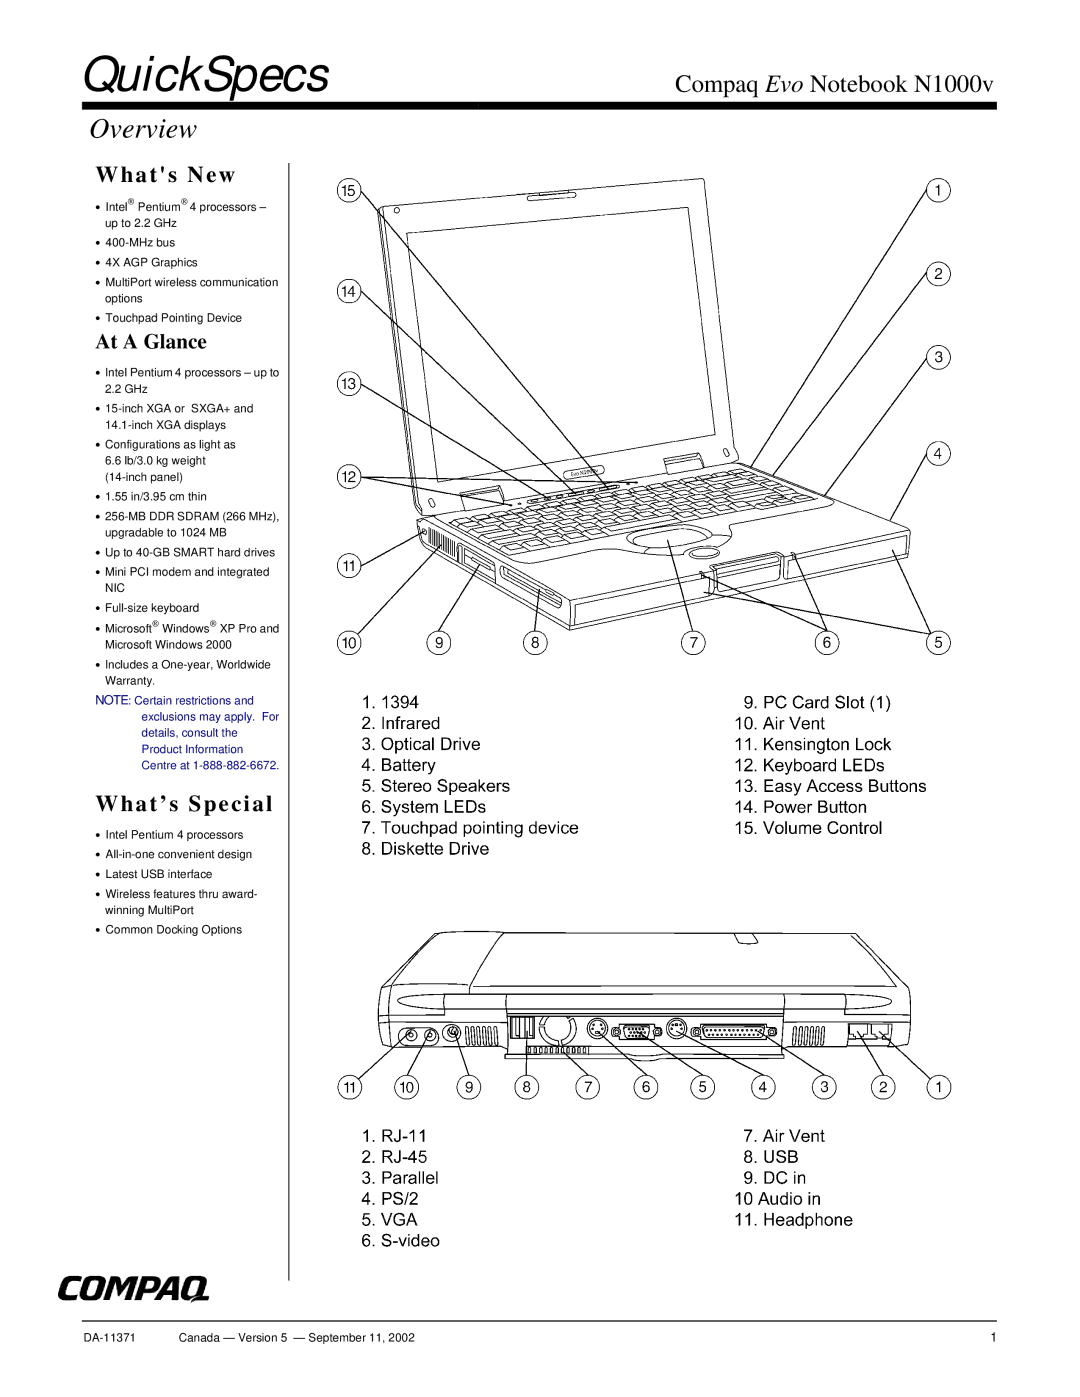 Compaq N1000v warranty QuickSpecs, Overview 